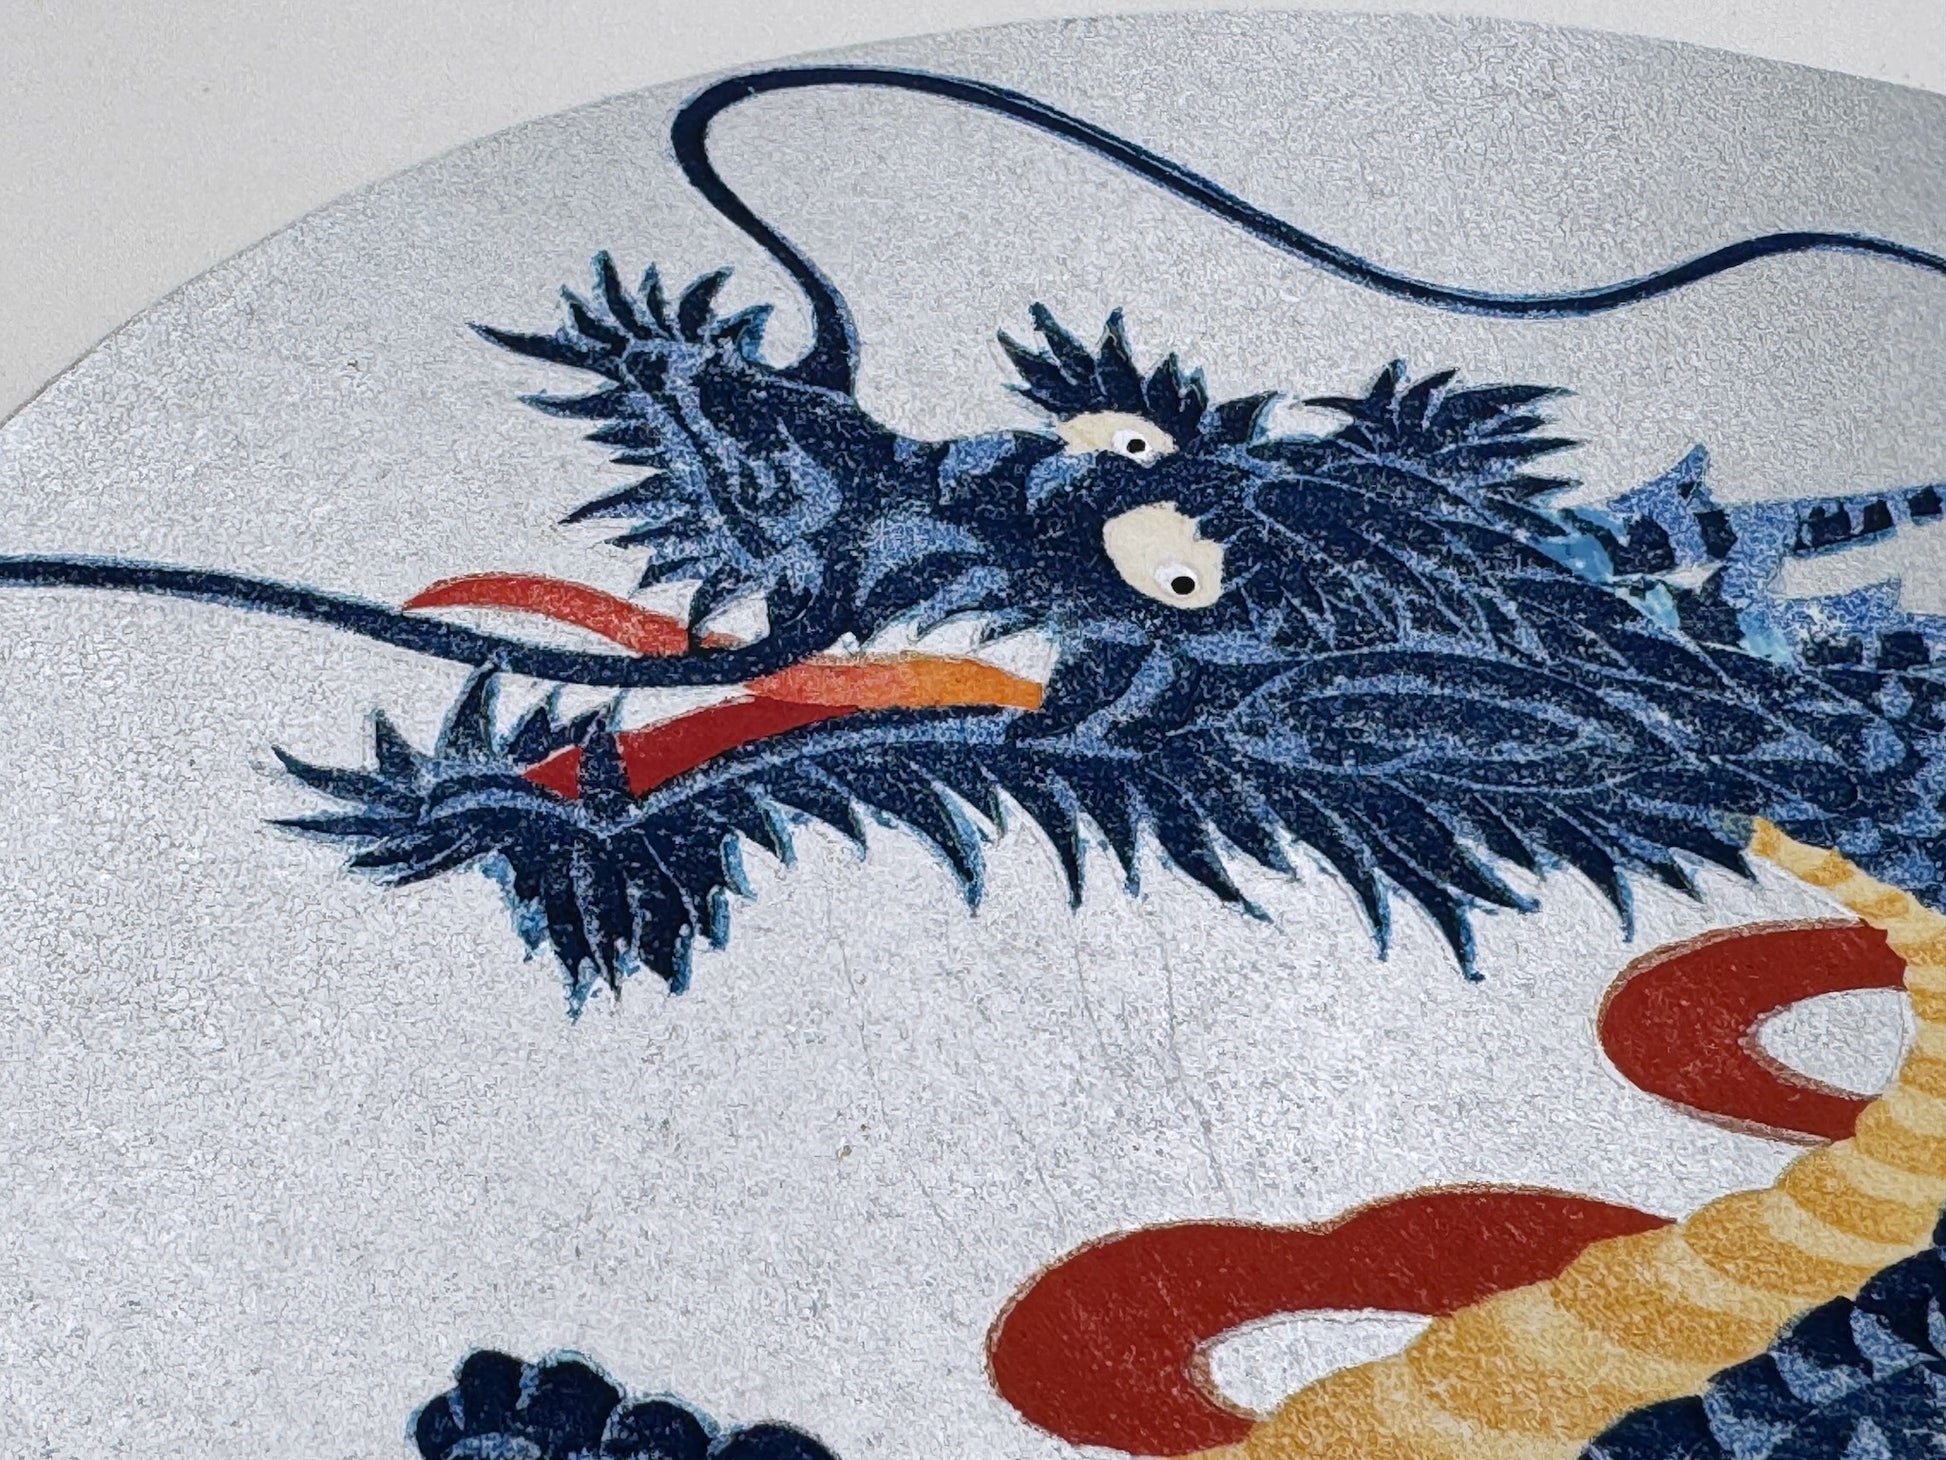 estampe japonaise dragon bleu gueule ouverte sur fond ovale argent, gros plan sur la tête du dragon et ses longues moustaches